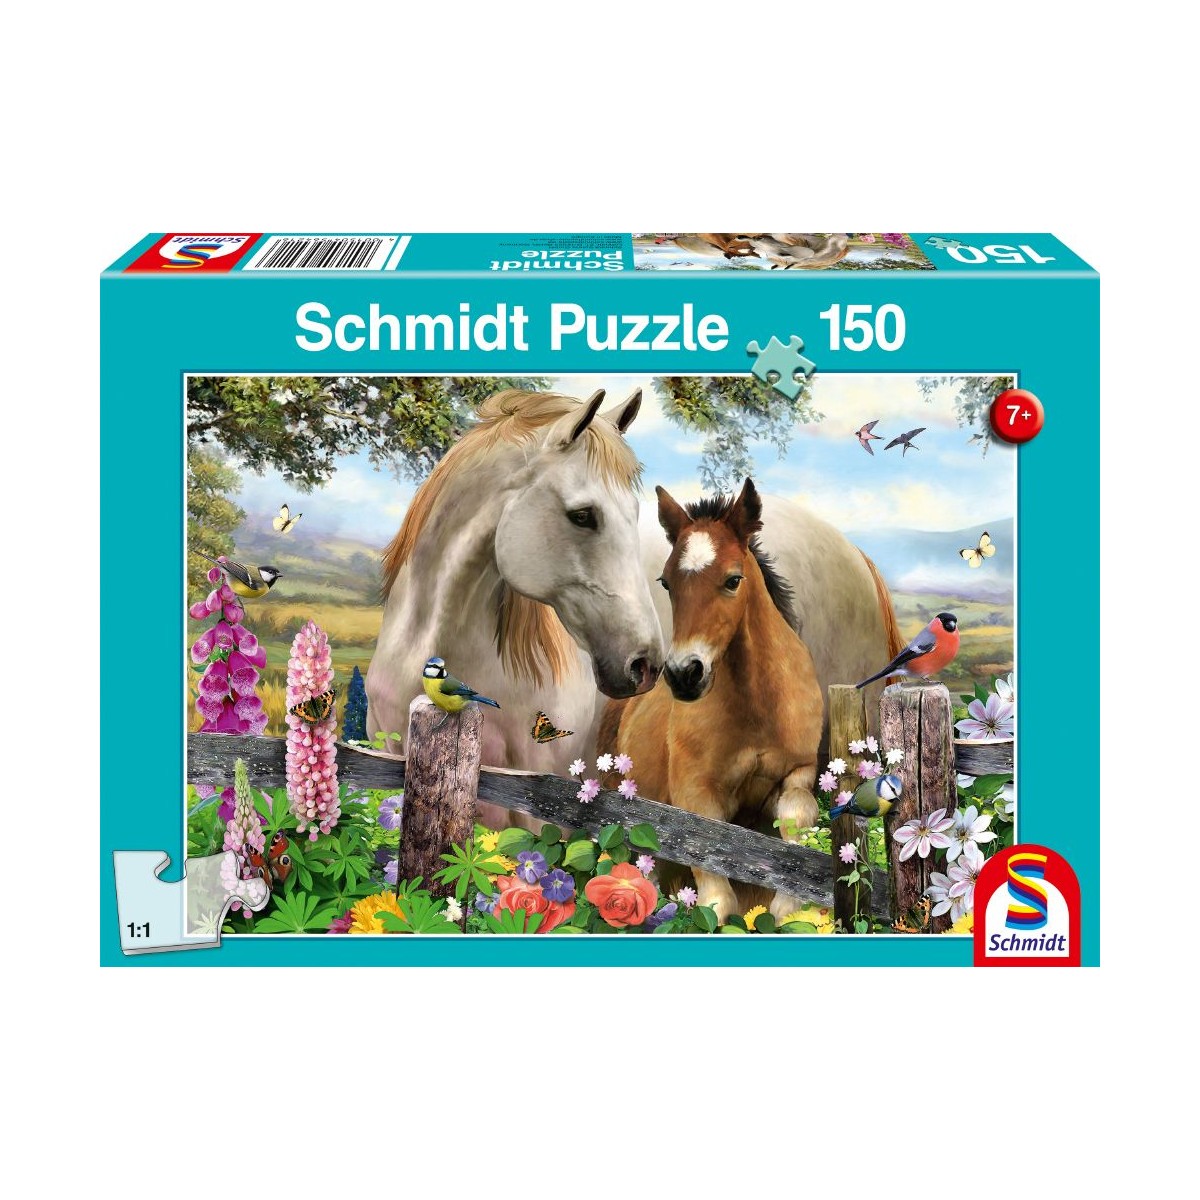 Schmidt Spiele - Puzzle - Stute und Fohlen, 150 Teile